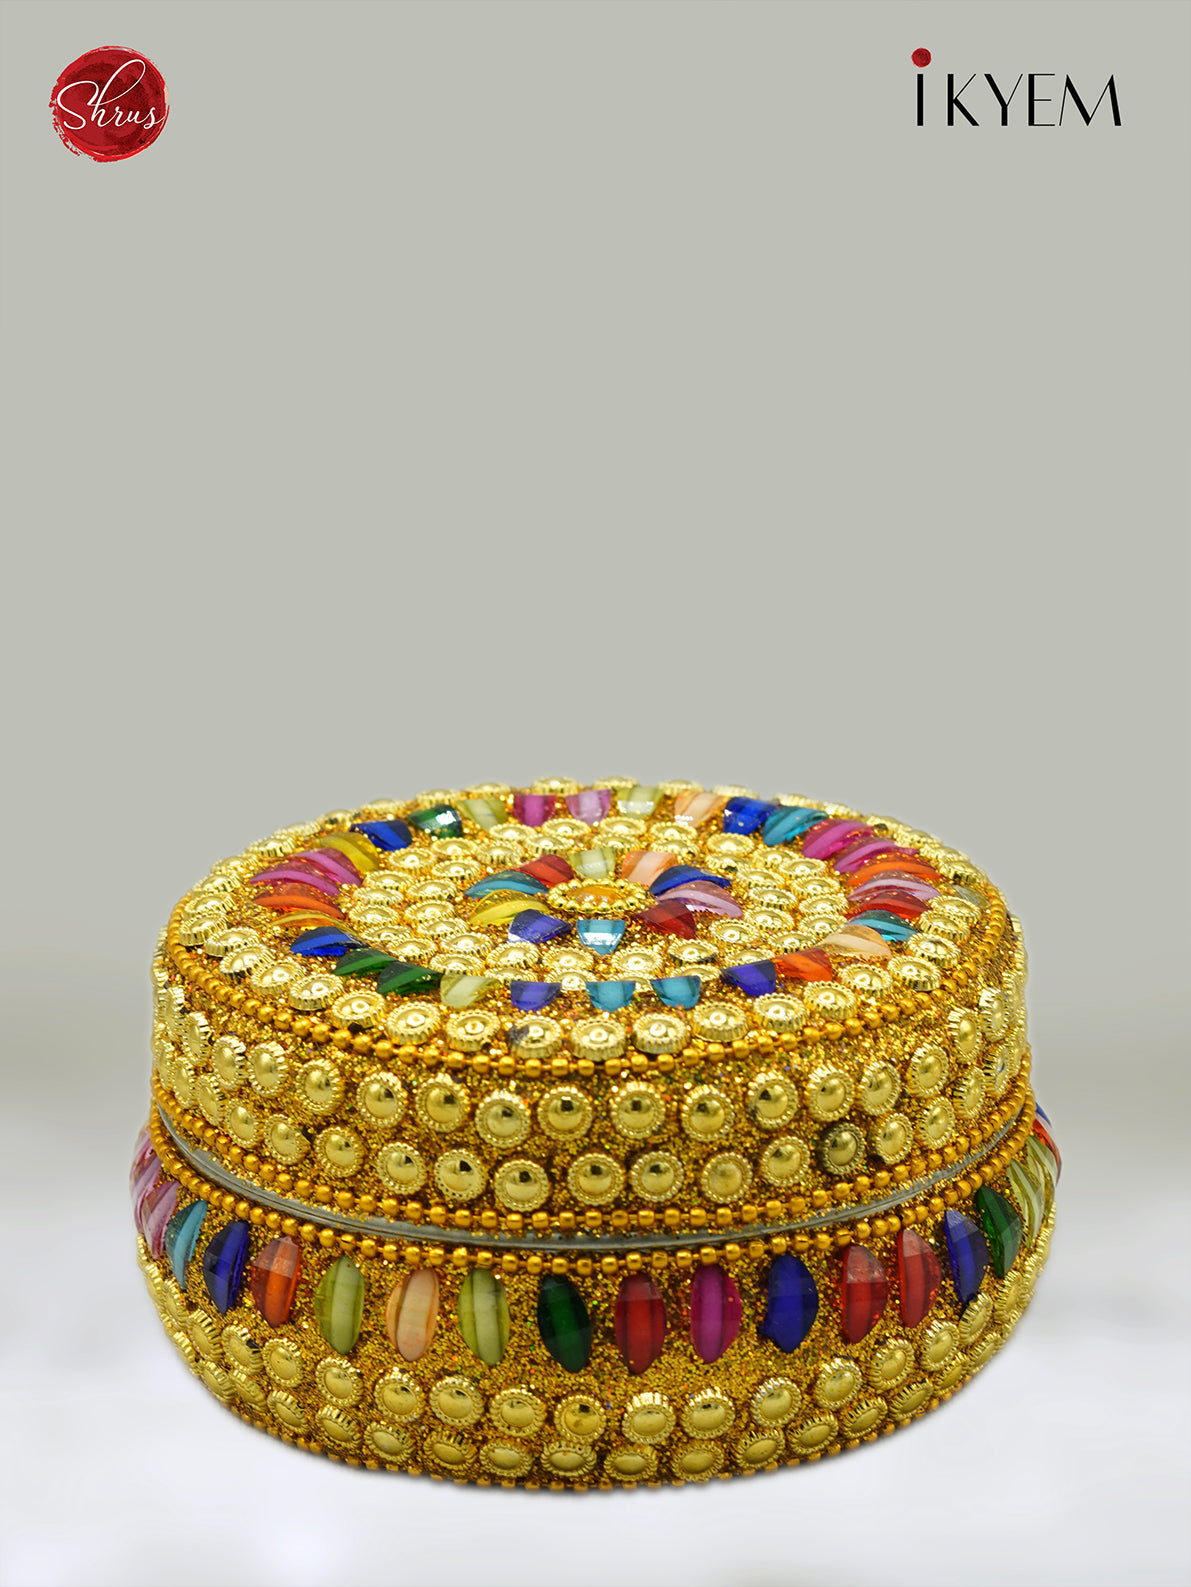 Decorative jewel Box